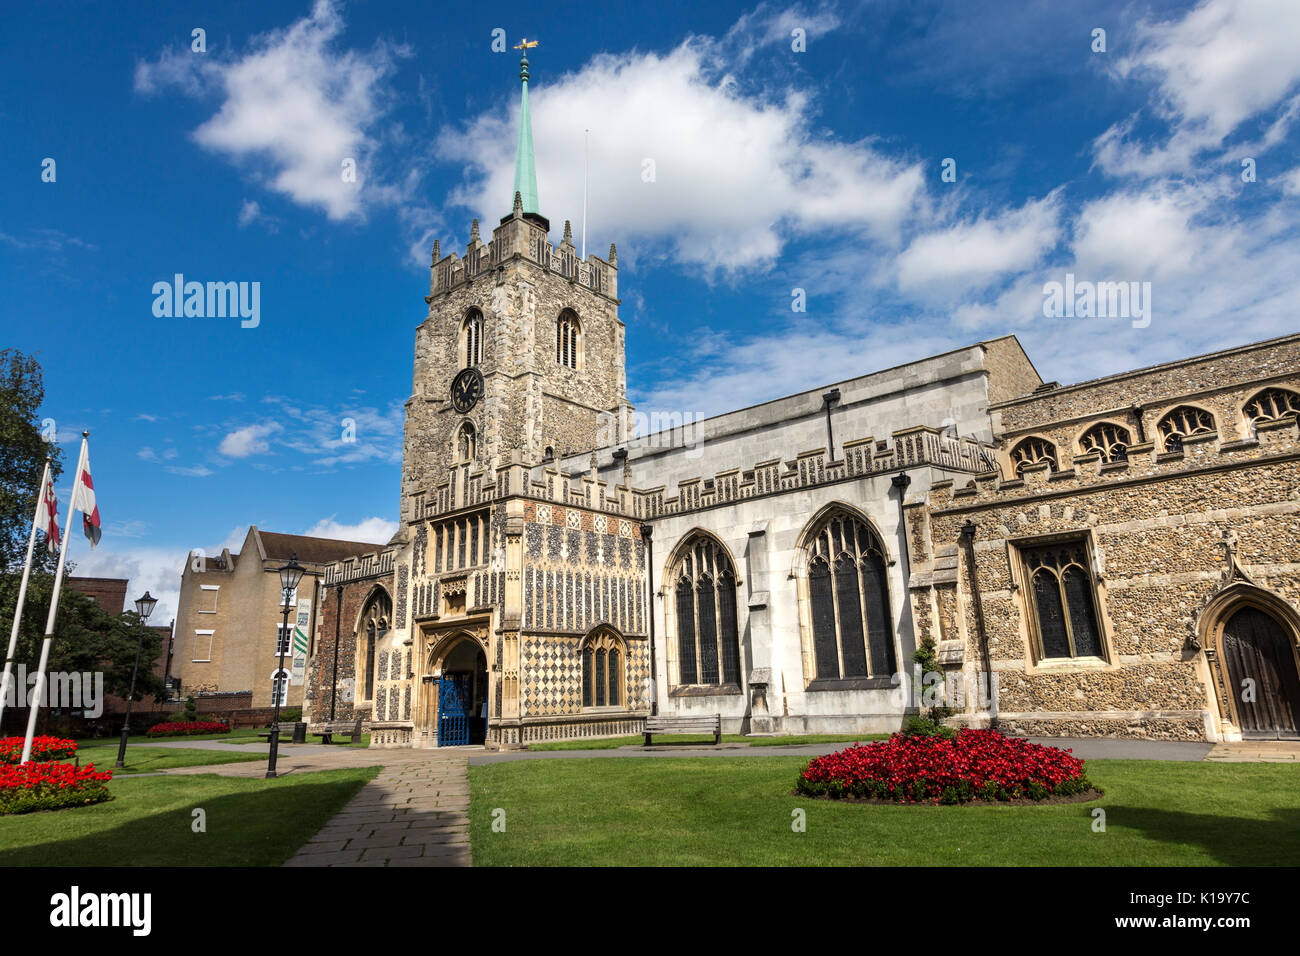 Dans la cathédrale de Chelmsford Chelmsford, Essex, UK Banque D'Images